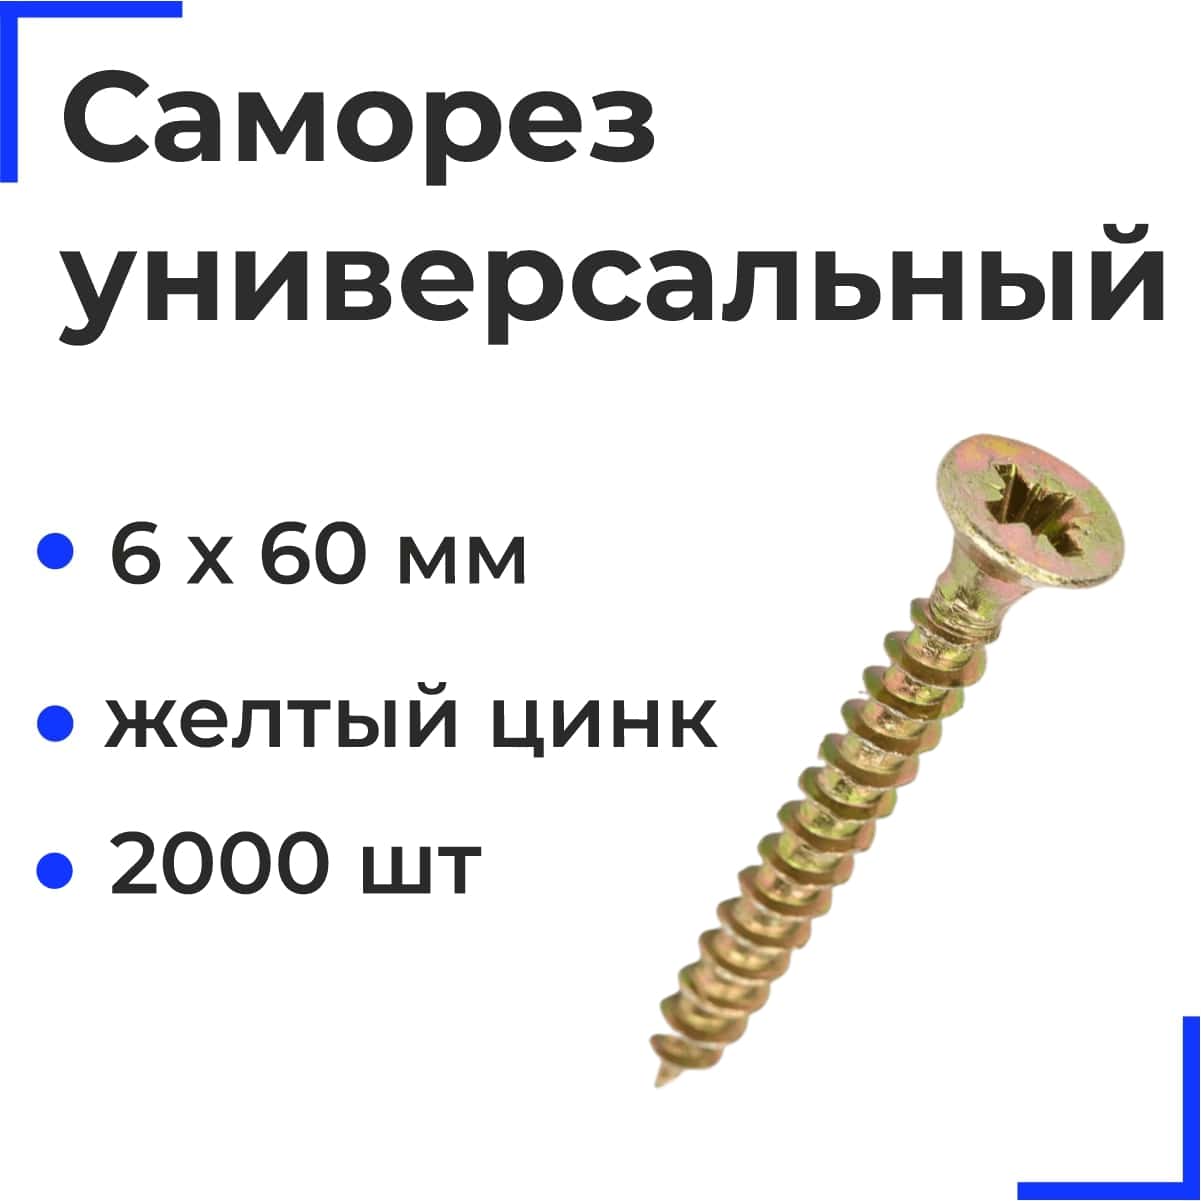 Саморез универсальный 6х60 желтый цинк (2000шт/15кг) РФ.